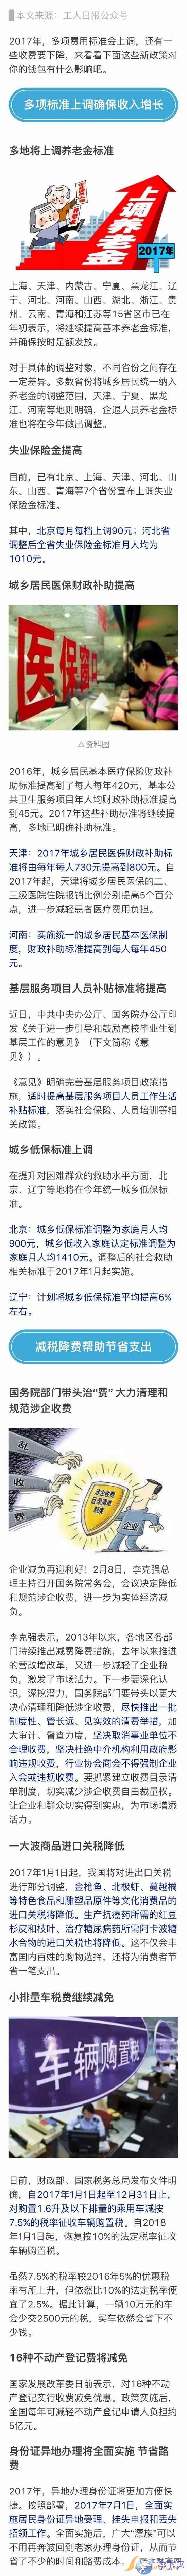 2016上海企业退休养老金上调 上海2017年退休职工涨工资最新消息